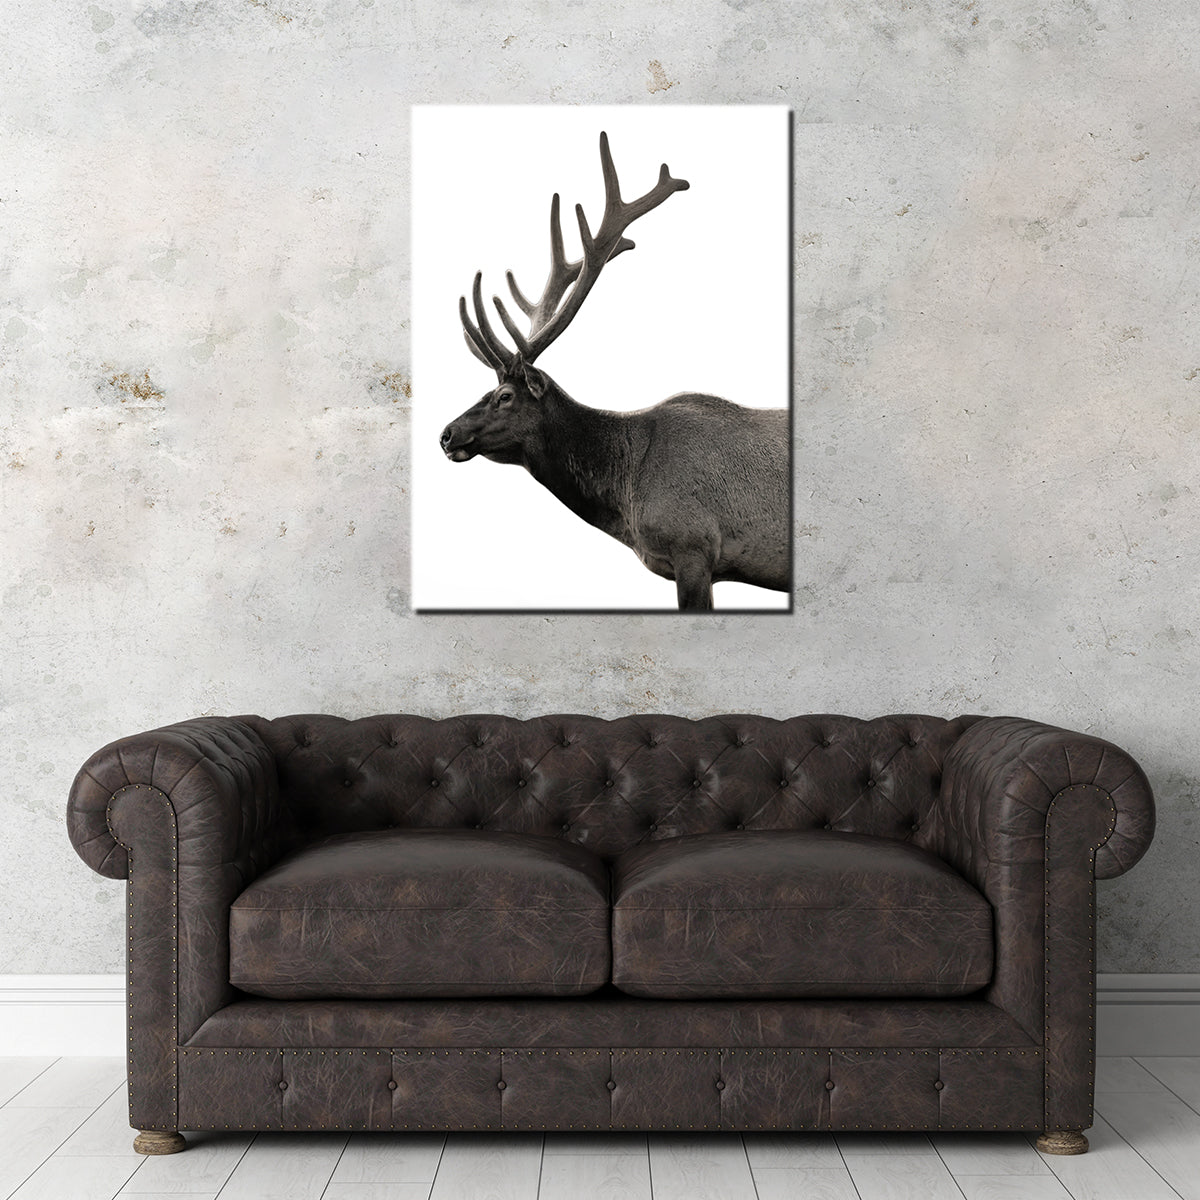 Deer Grayscale